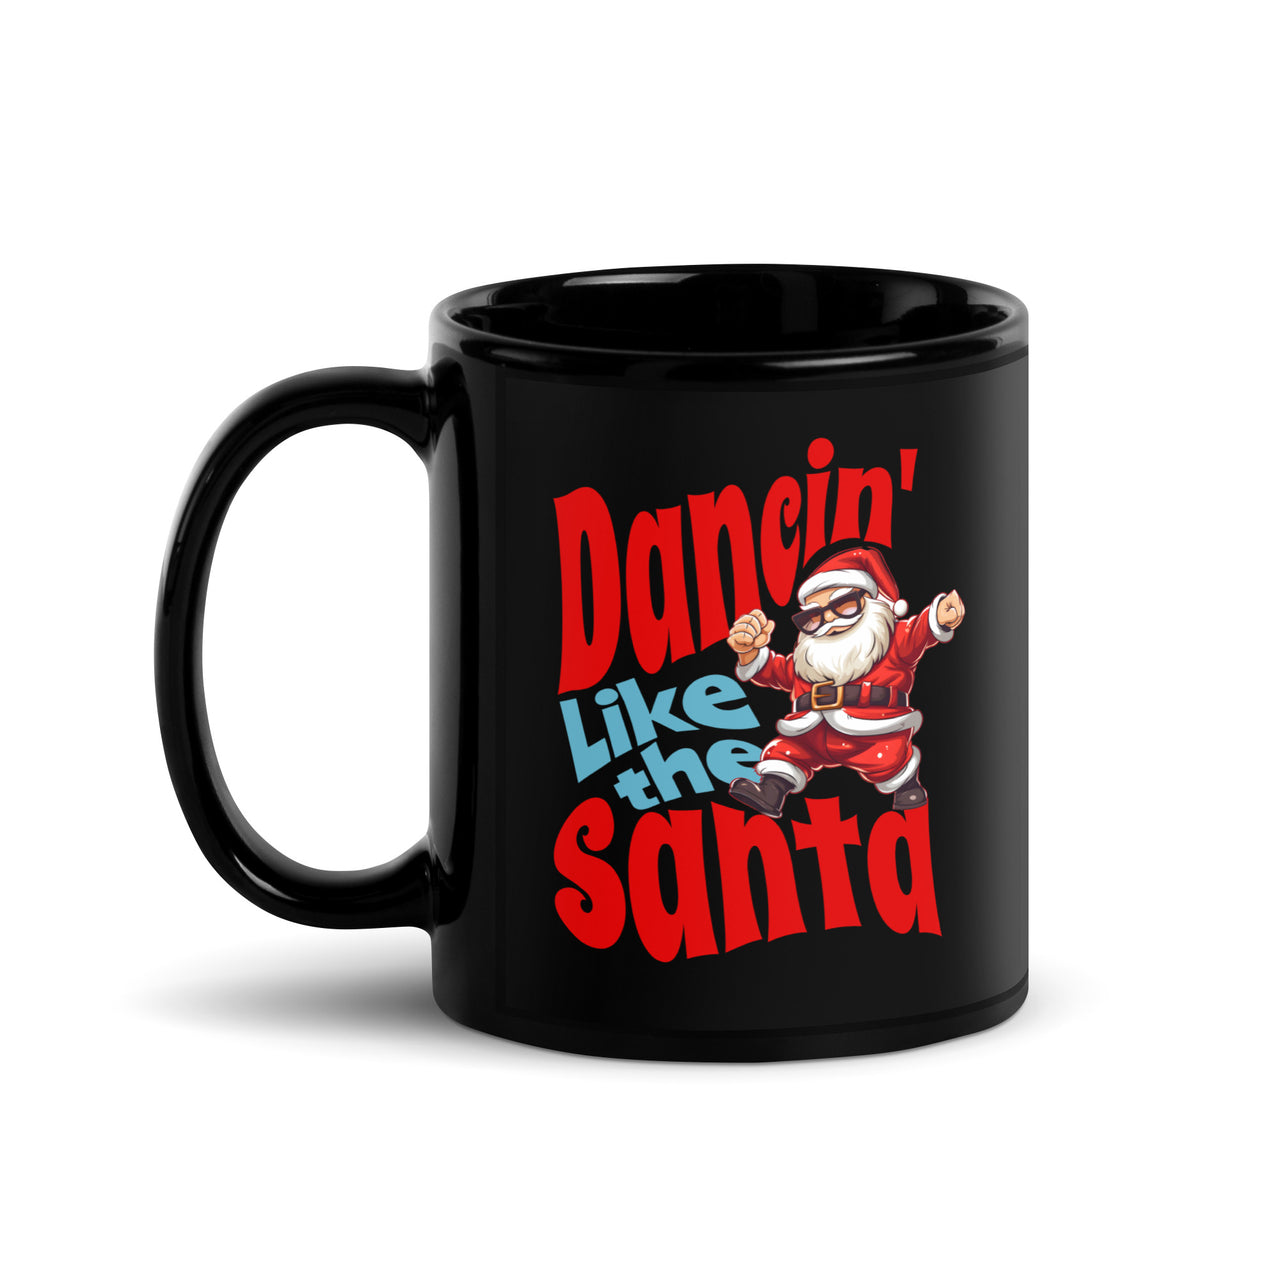 Dancin' Like the Santa Black Mug